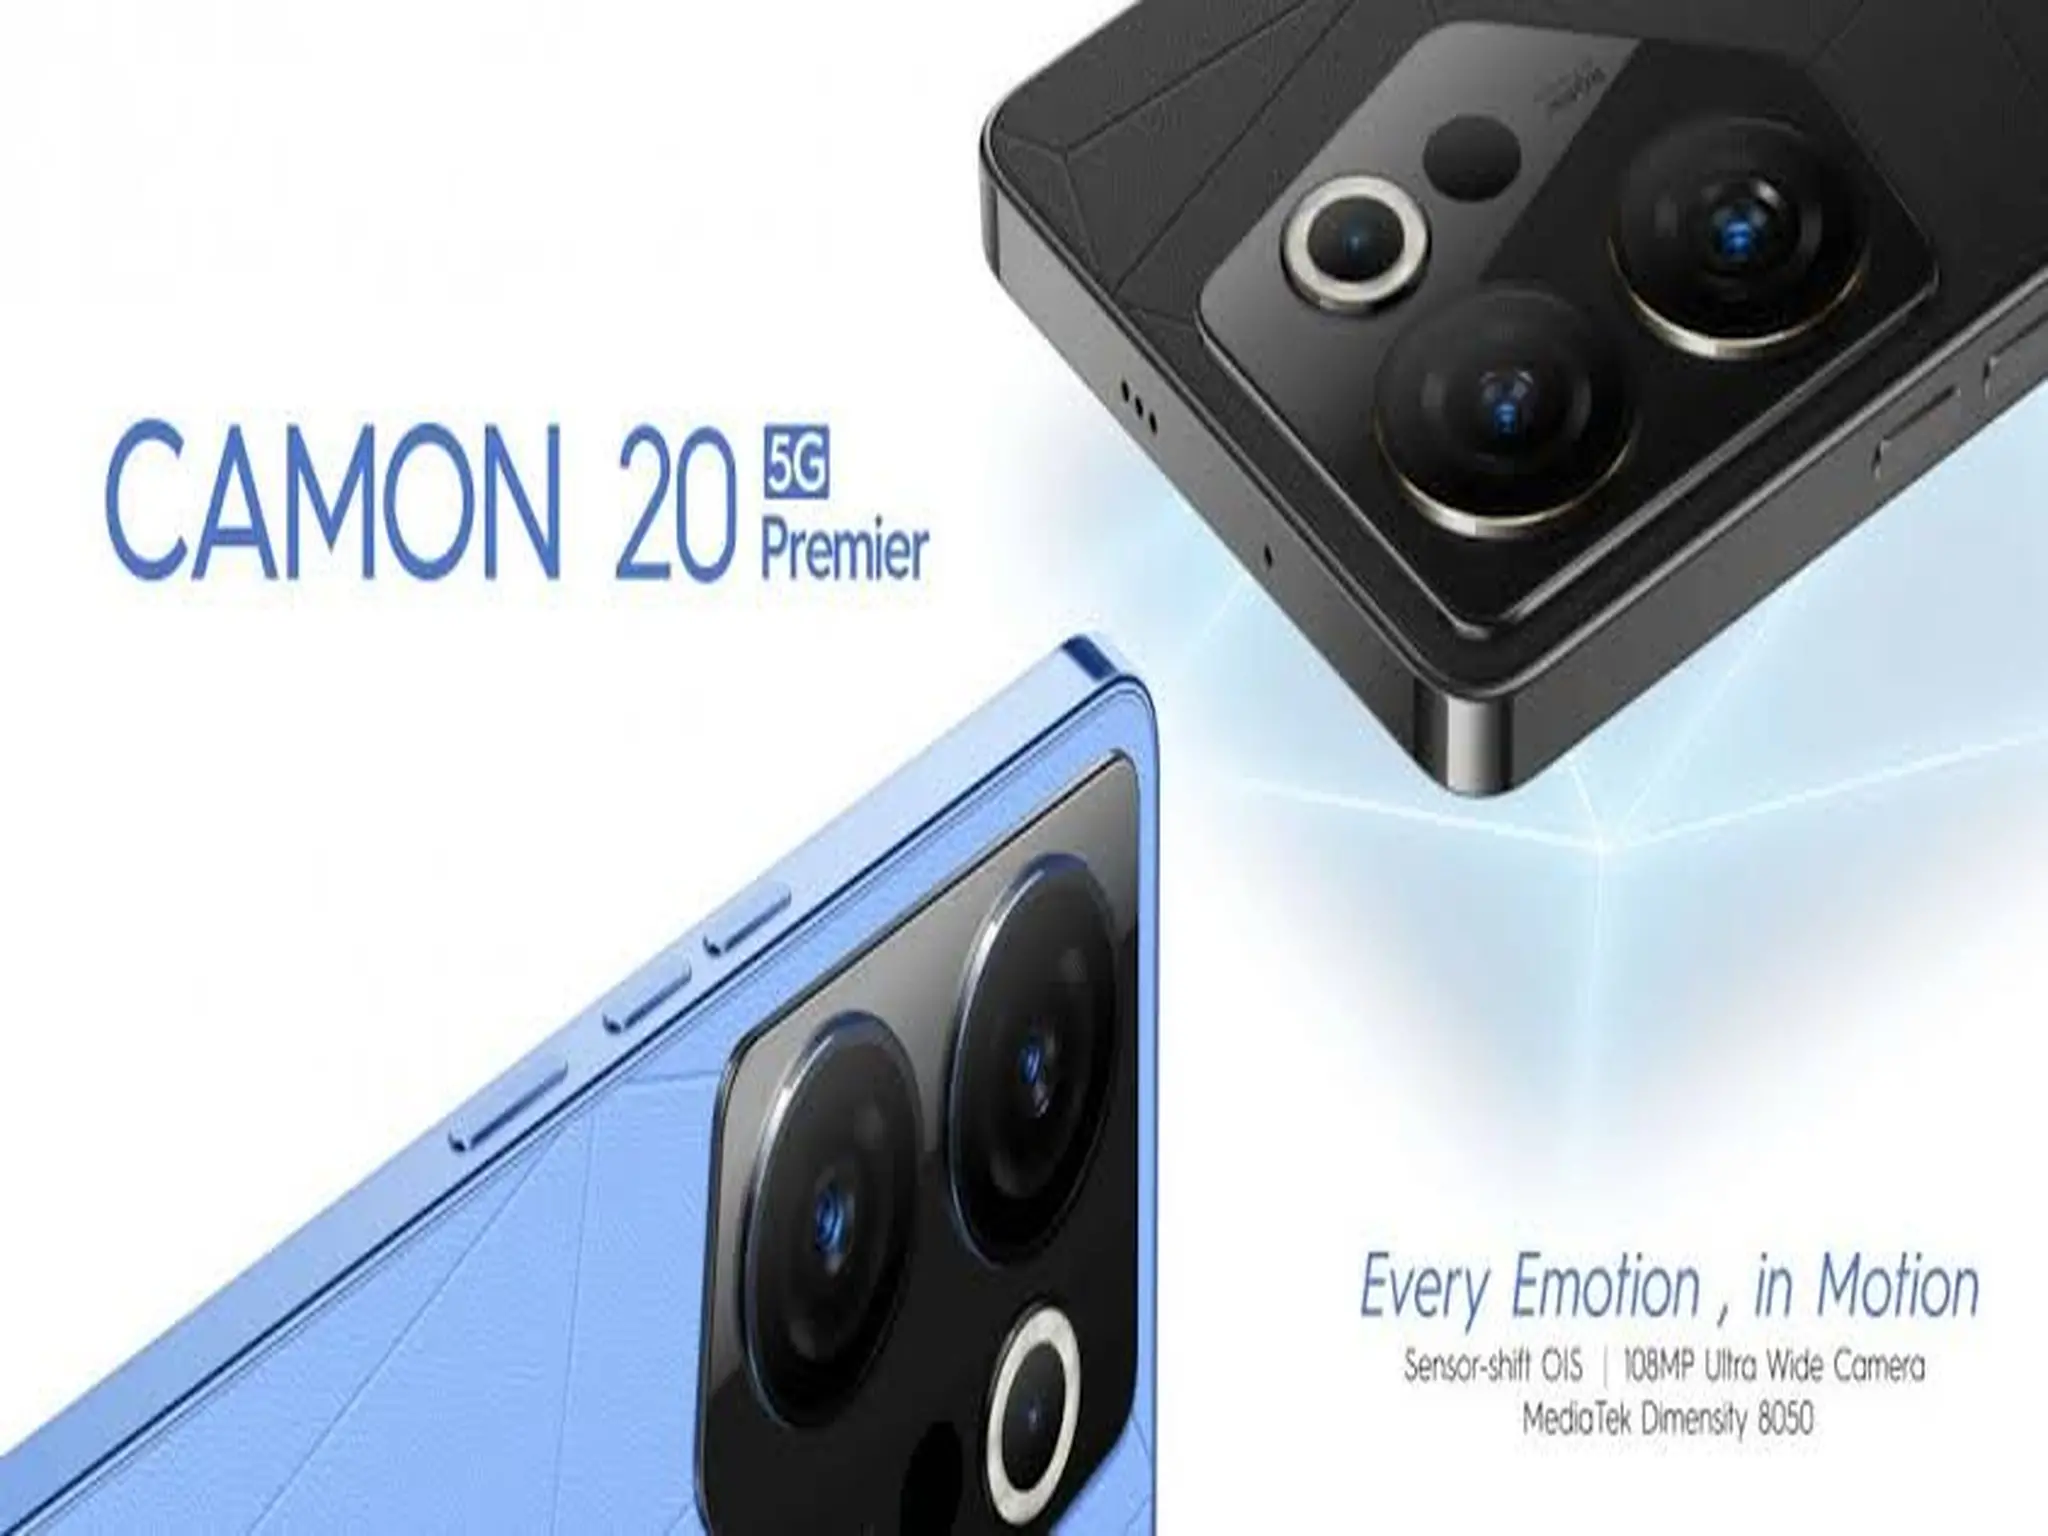 شركة تكنو تكشف عن أحدث هواتفها Camon 20 Premier عملاق التصوير